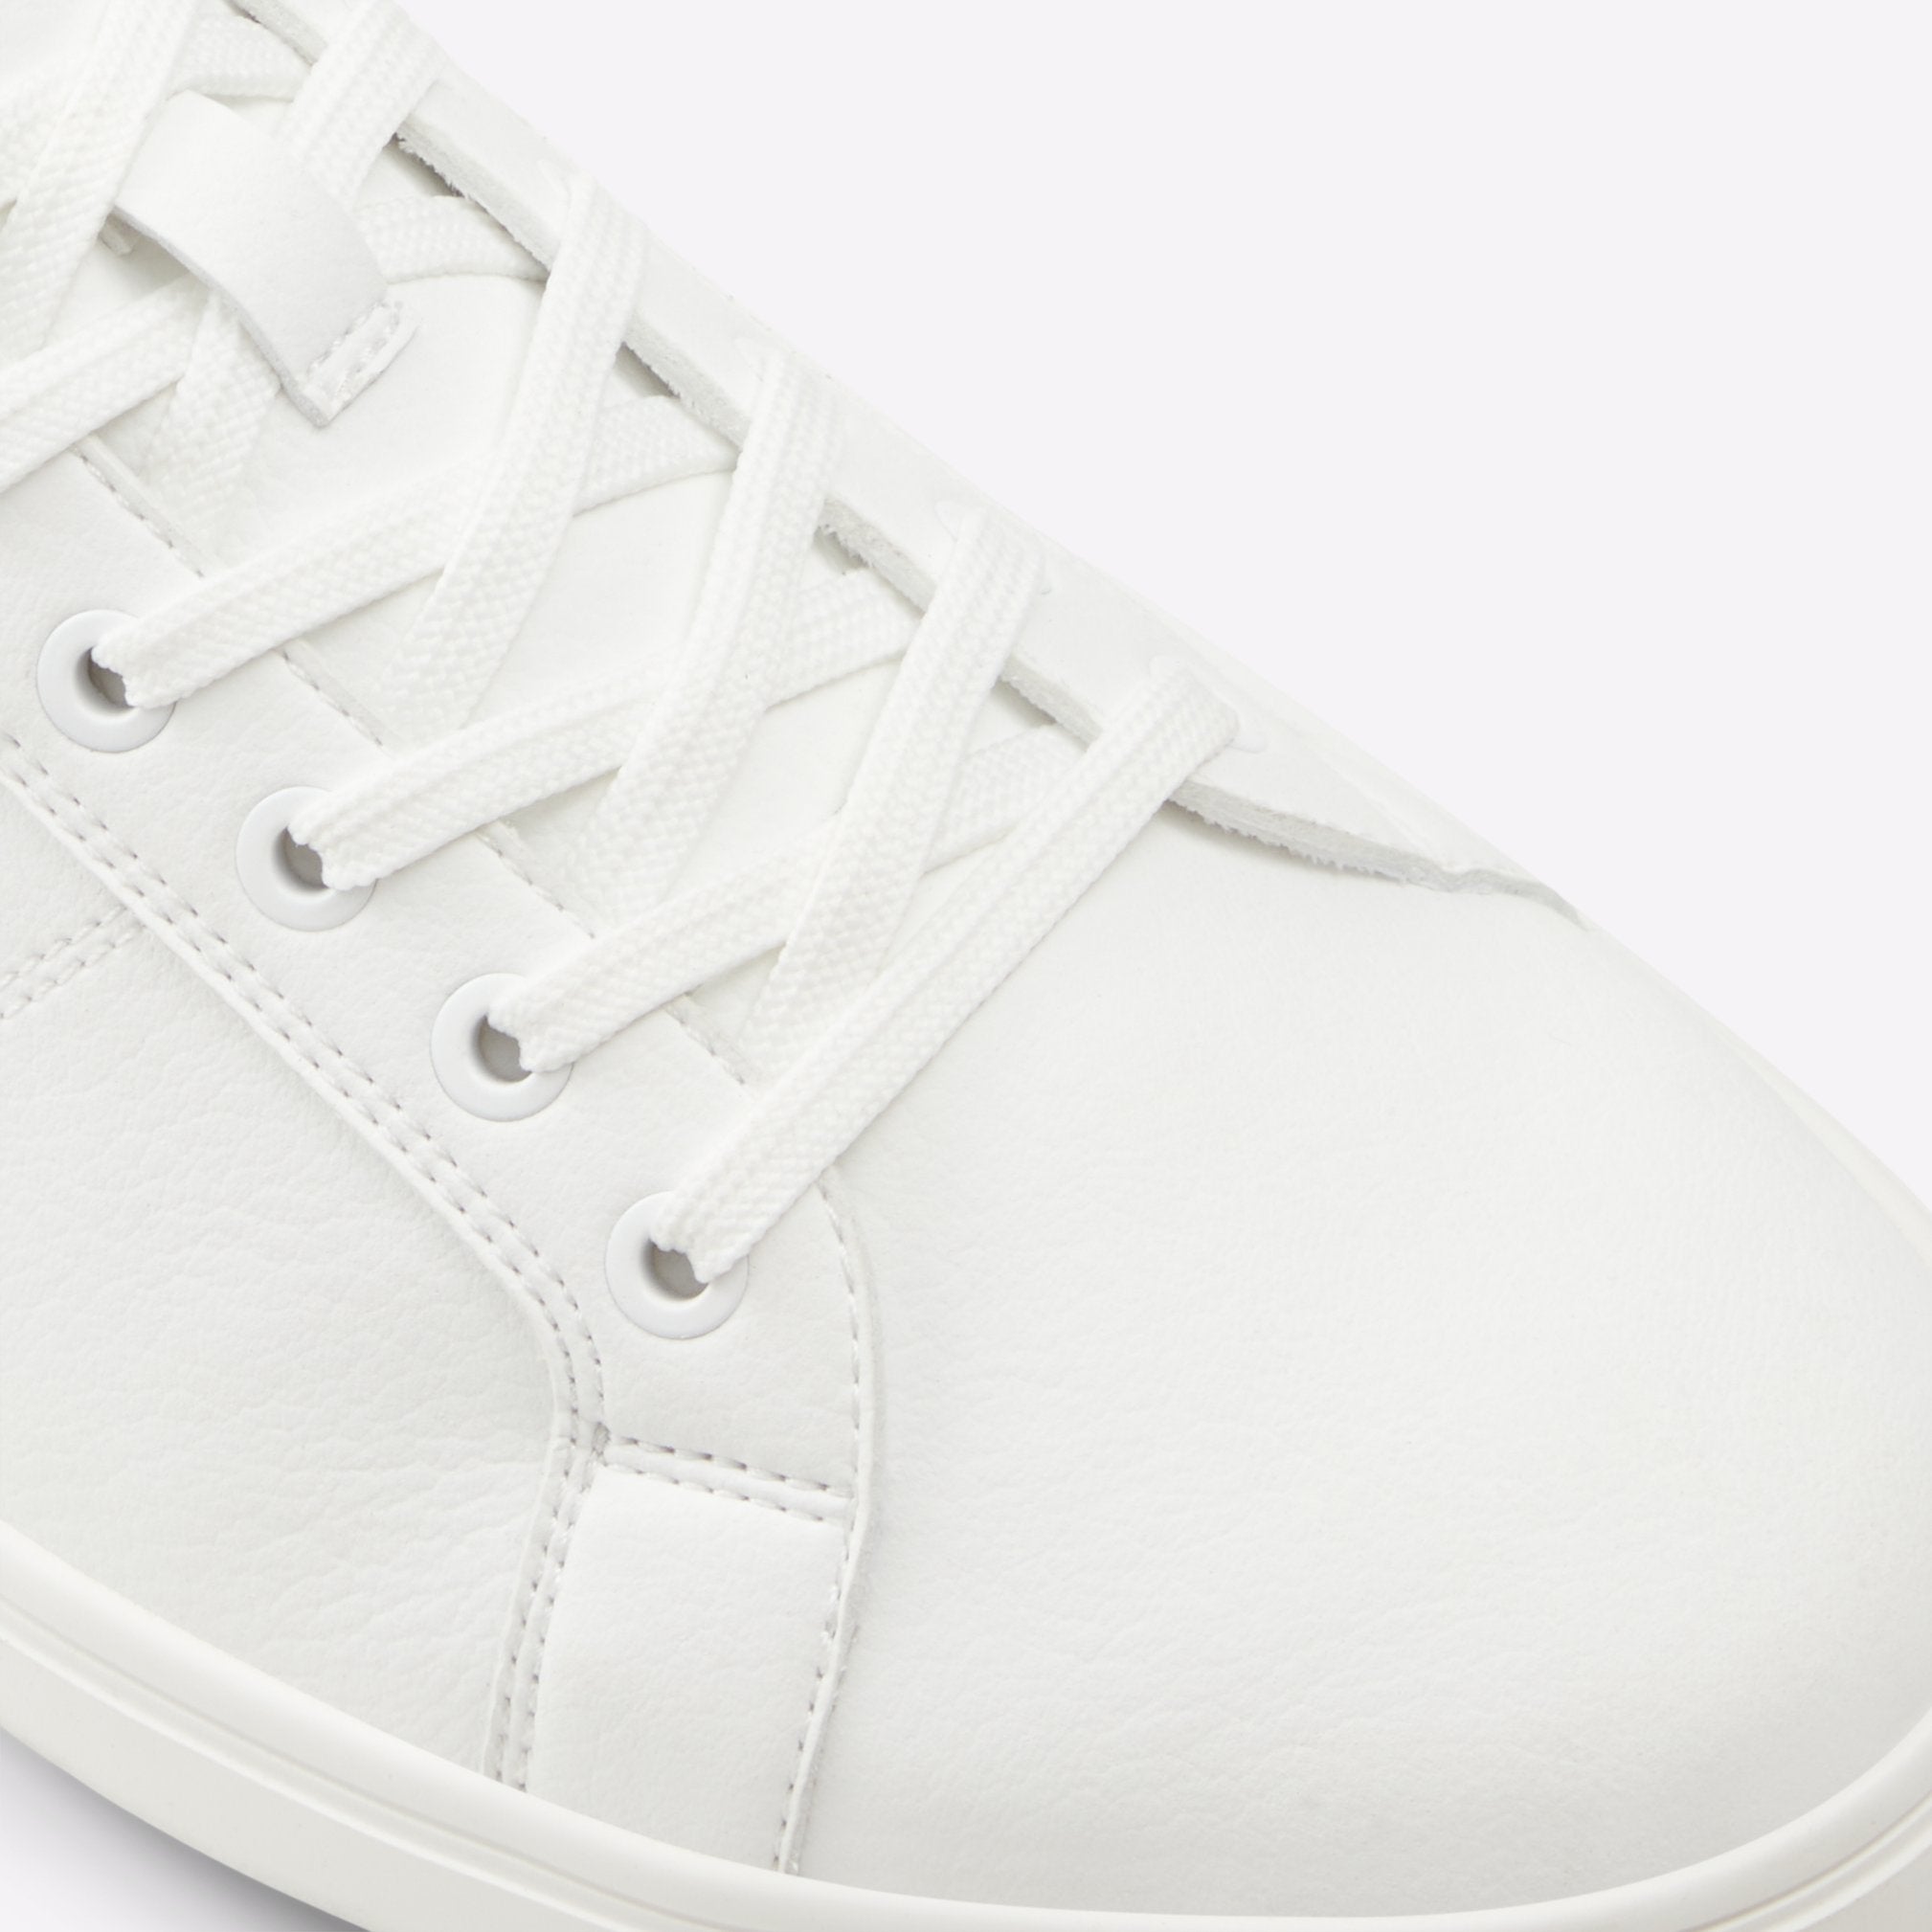 Koisen Men Shoes - White - ALDO KSA